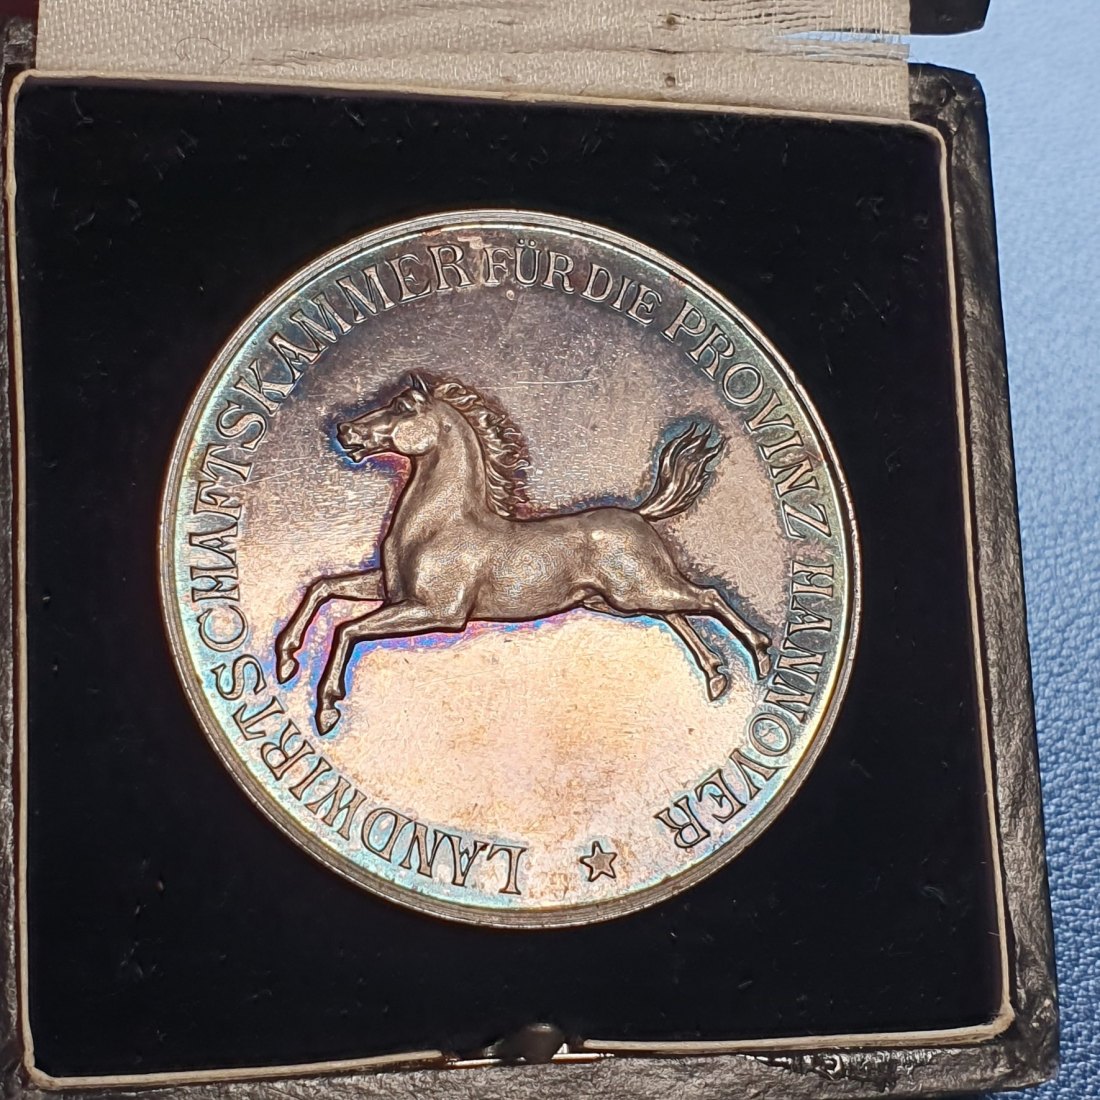  Medaille Silber 990 gepunzt FÜR HERVORRAGENDE DIENSTE Landwirtschaftskammer Hannover   